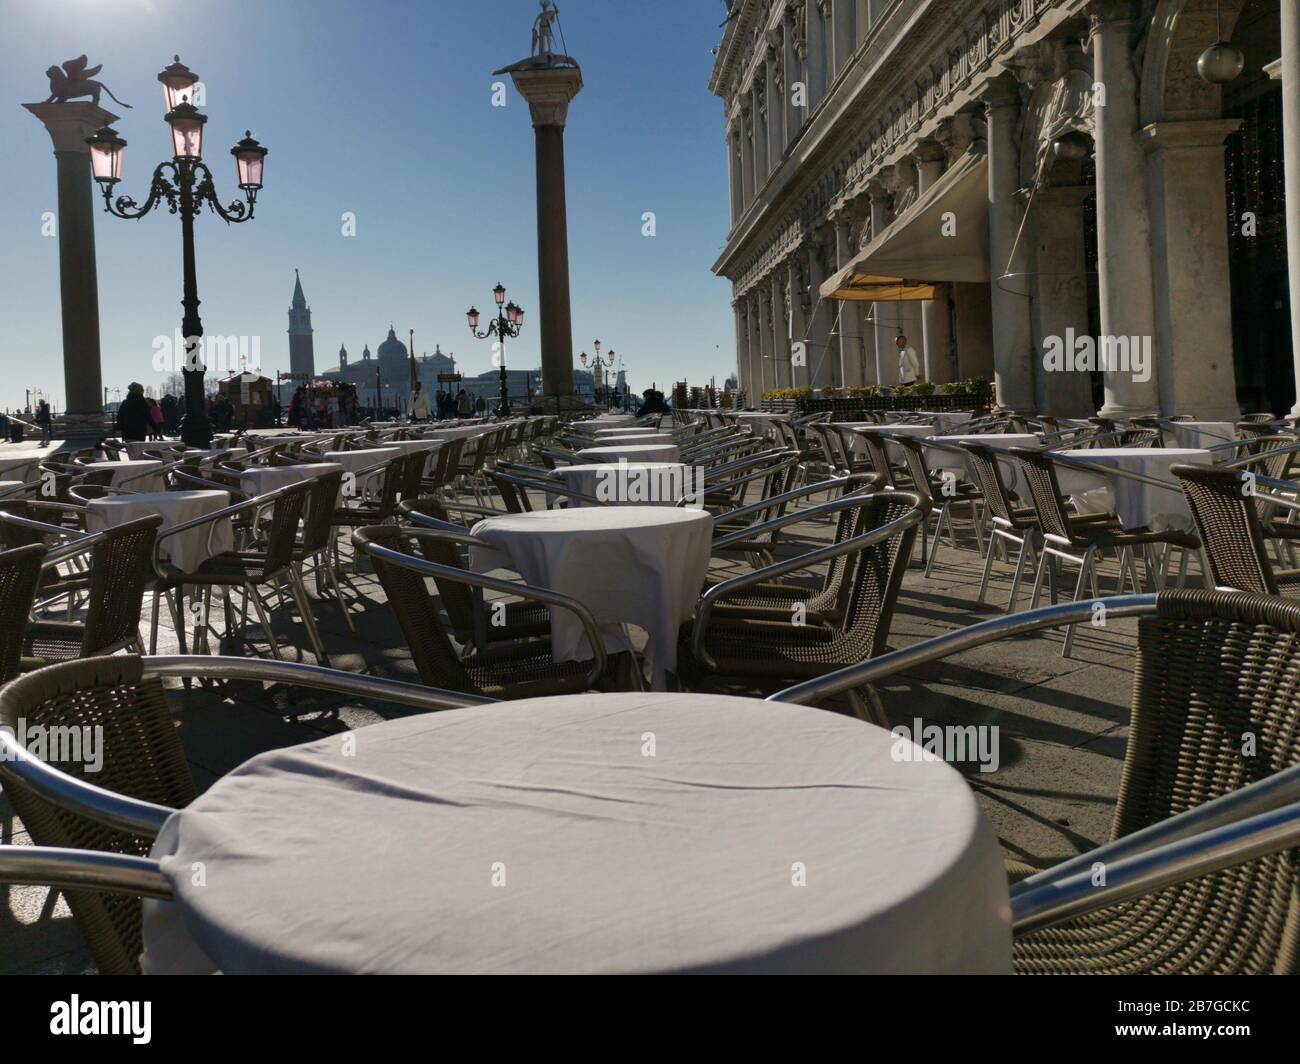 Venedig im Februar 2020, leere Tische vor einem Café am Markusplatz wegen der Coronavirus-Pandemie. Keine Touristen und Gäste mehr. Stockfoto